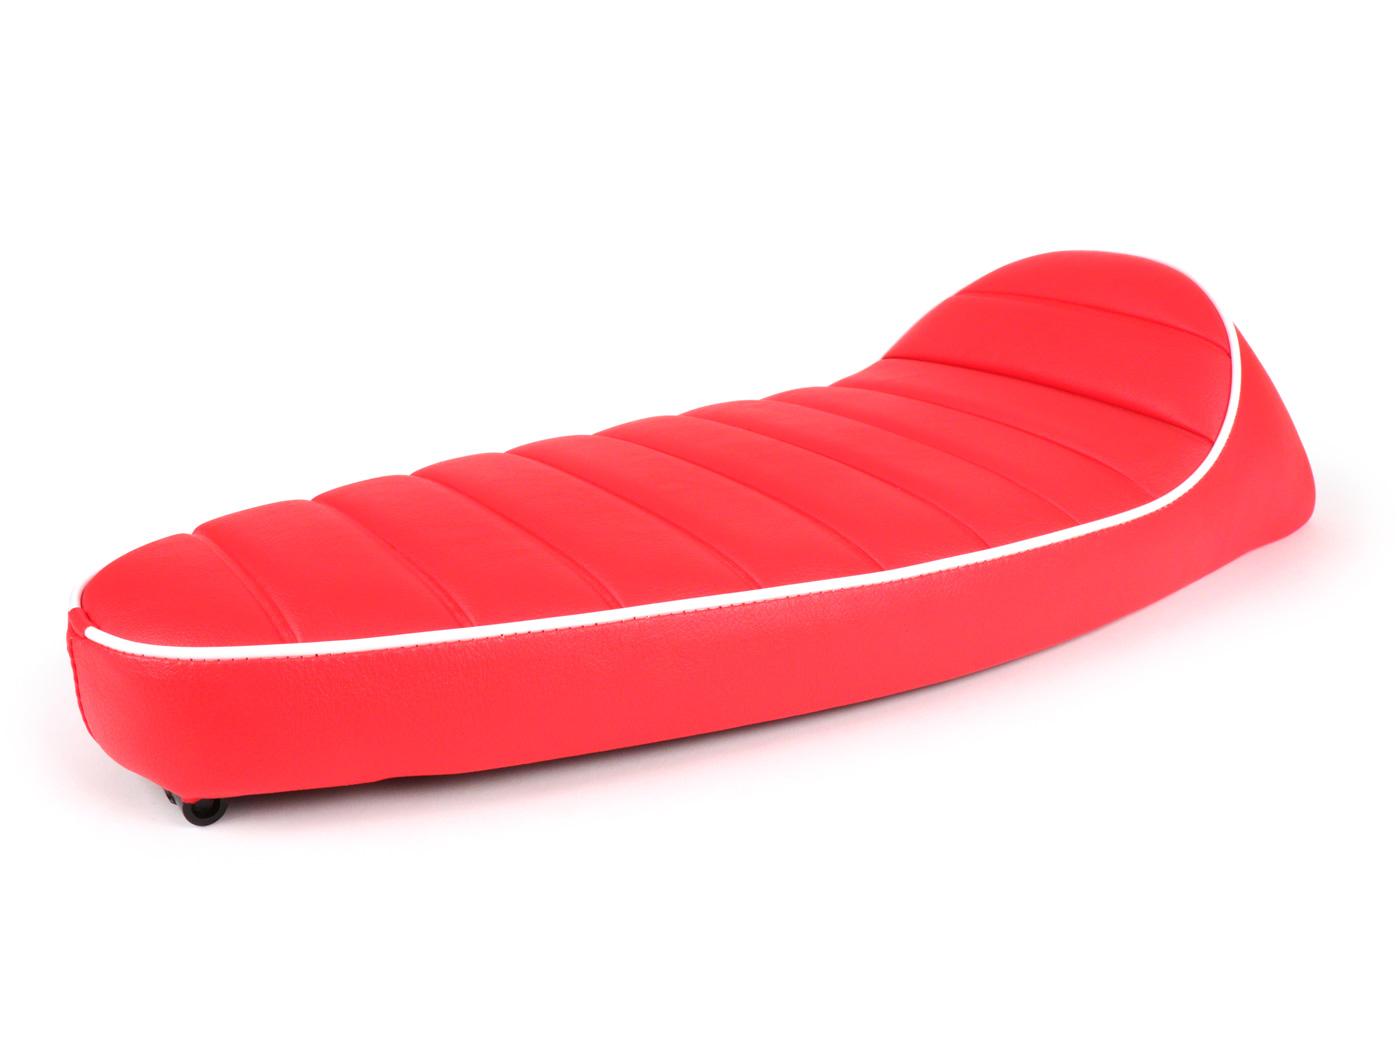 Seat -FASTBACK 2.0- red with white border Vespa 50, ET3, Primavera